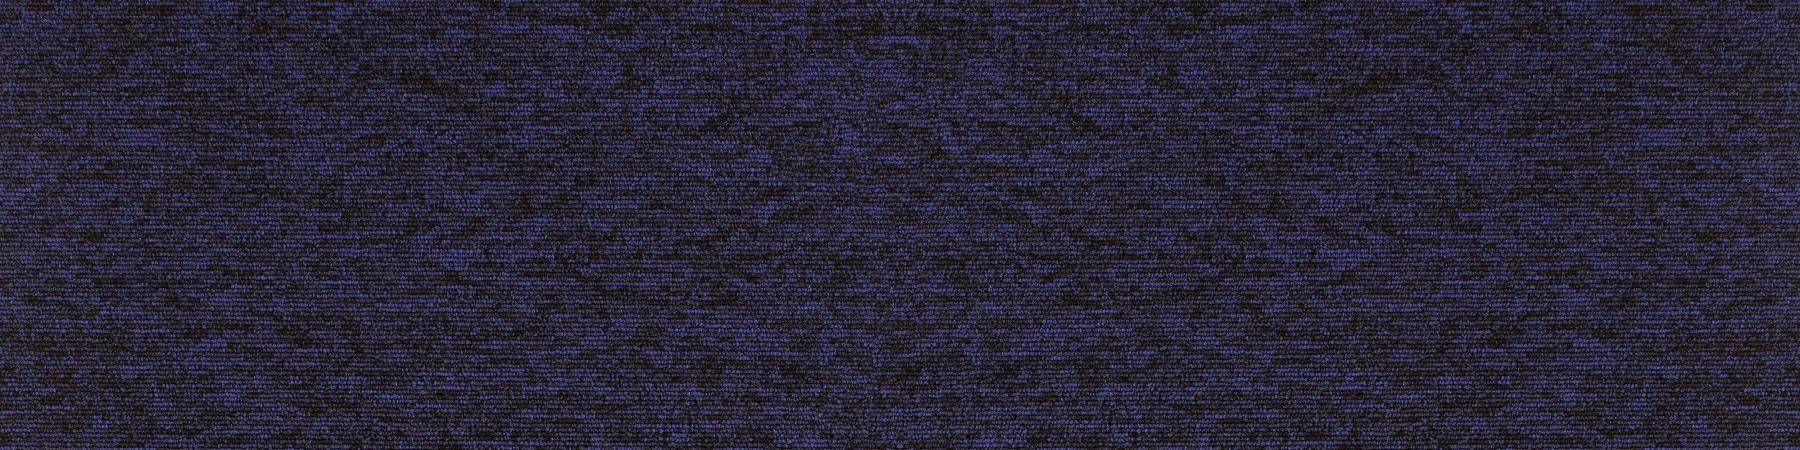 Burmatex Tivoli Heavy Contract Carpet Planks Ionian Blue 21164